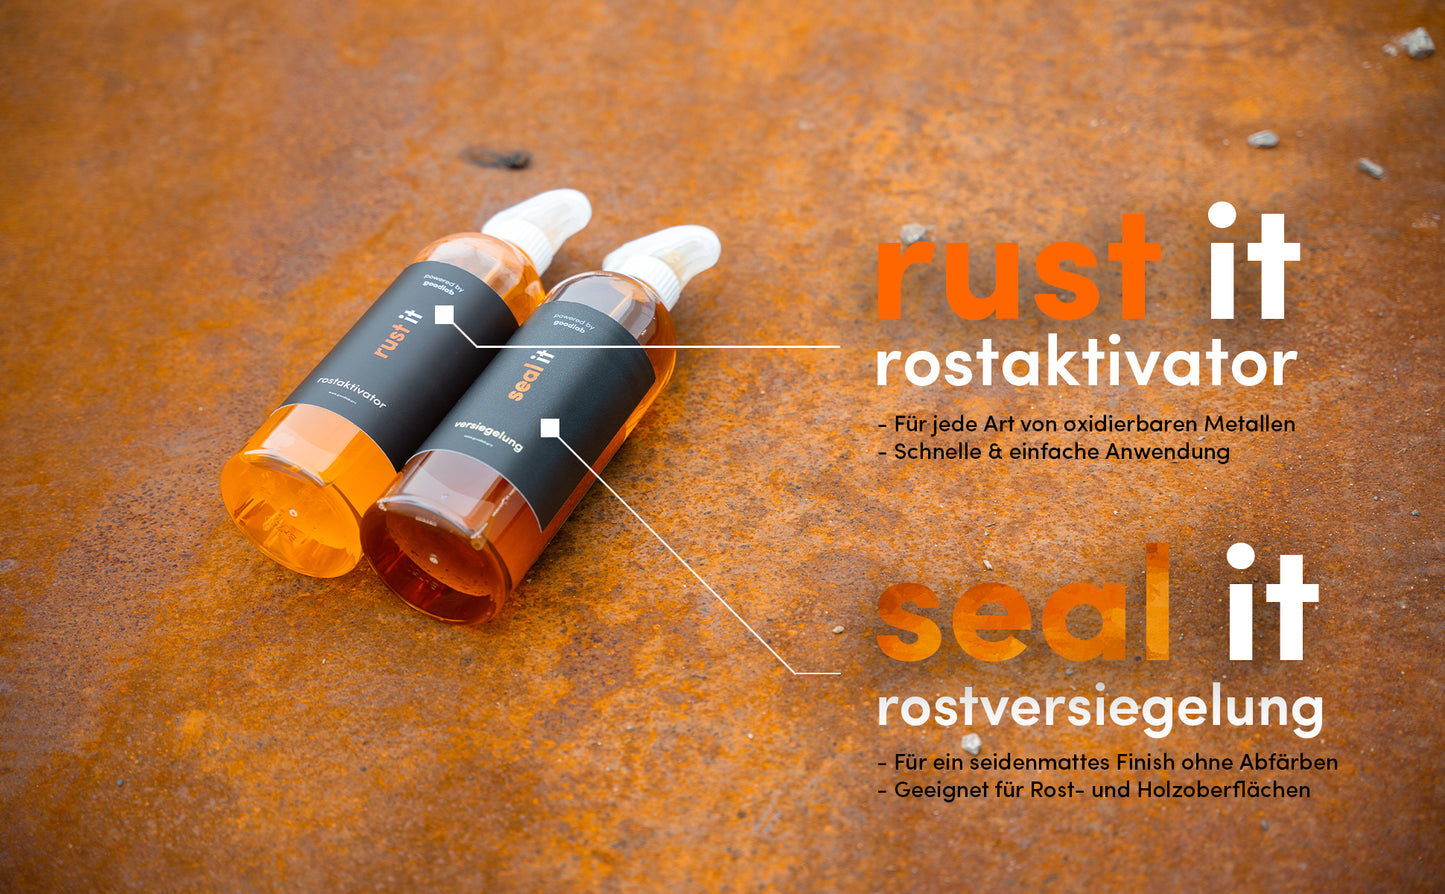 RustIT Rostaktivator | Für jede Art von oxidierbaren Metallen